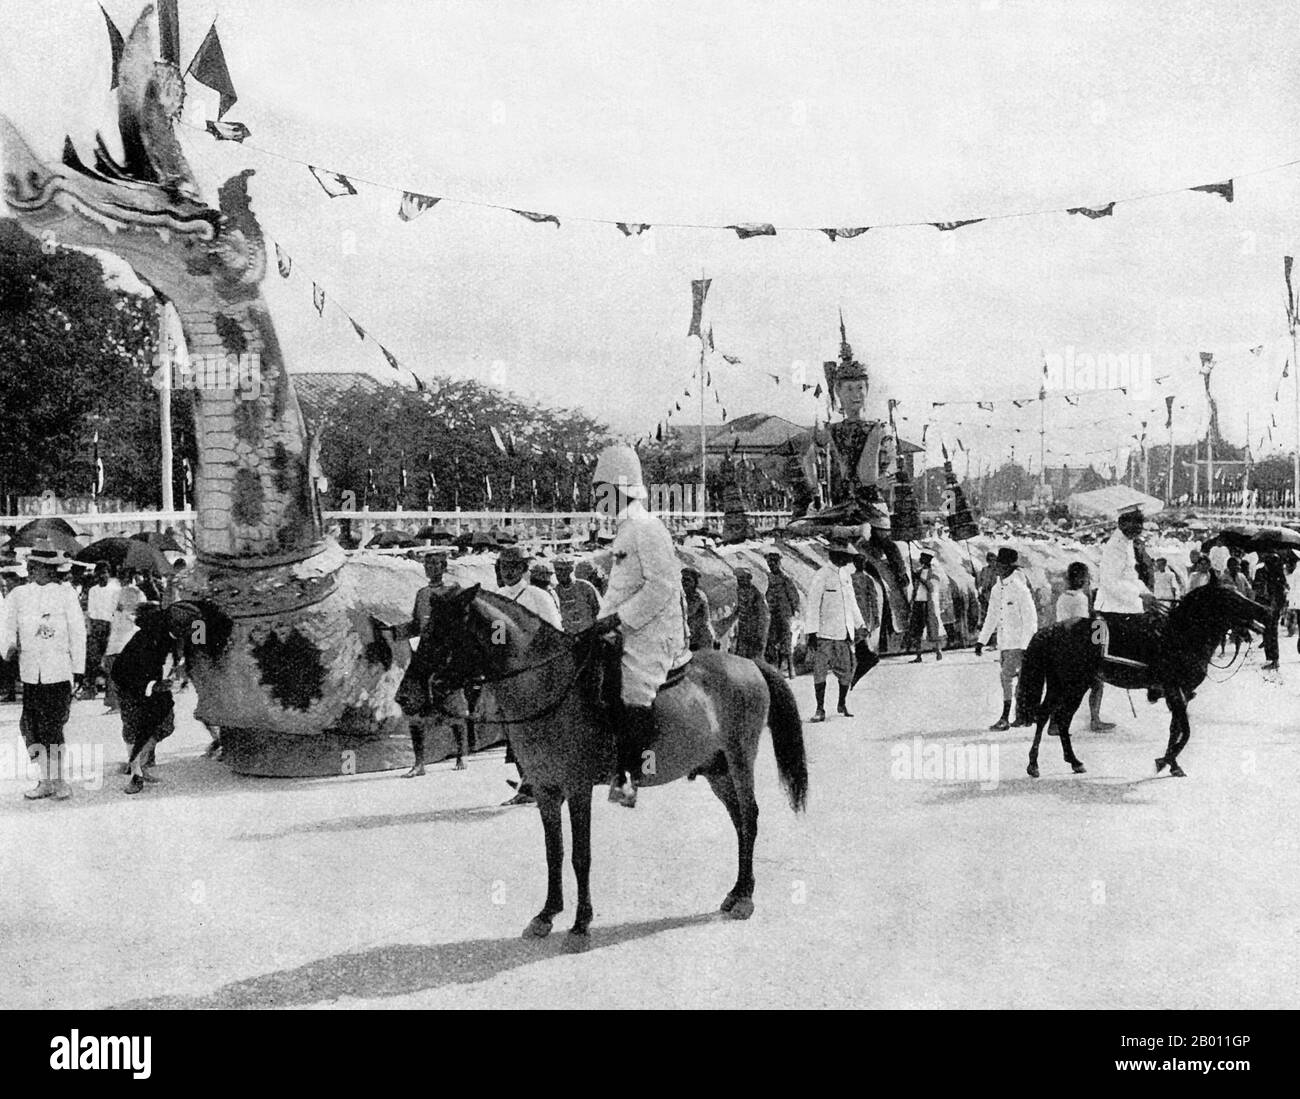 Thailandia: Un drago fa parte della processione per il 40° giubileo del re Chulalongkorn nel 1908. Re Chulalongkorn, Rama V (1853–1910) fu il quinto monarca del Siam sotto la Casa di Chakri. Aderì al trono nel 1868 all'età di 15 anni dopo la morte di suo padre, Re Mongkut, Rama IV Il re Chulalongkorn è considerato uno dei più grandi re del Siam. Il suo regno è stato caratterizzato dalla modernizzazione del paese, comprese importanti riforme governative e sociali. Gli è inoltre accreditato di aver salvato Siam dall'essere colonizzato. Foto Stock